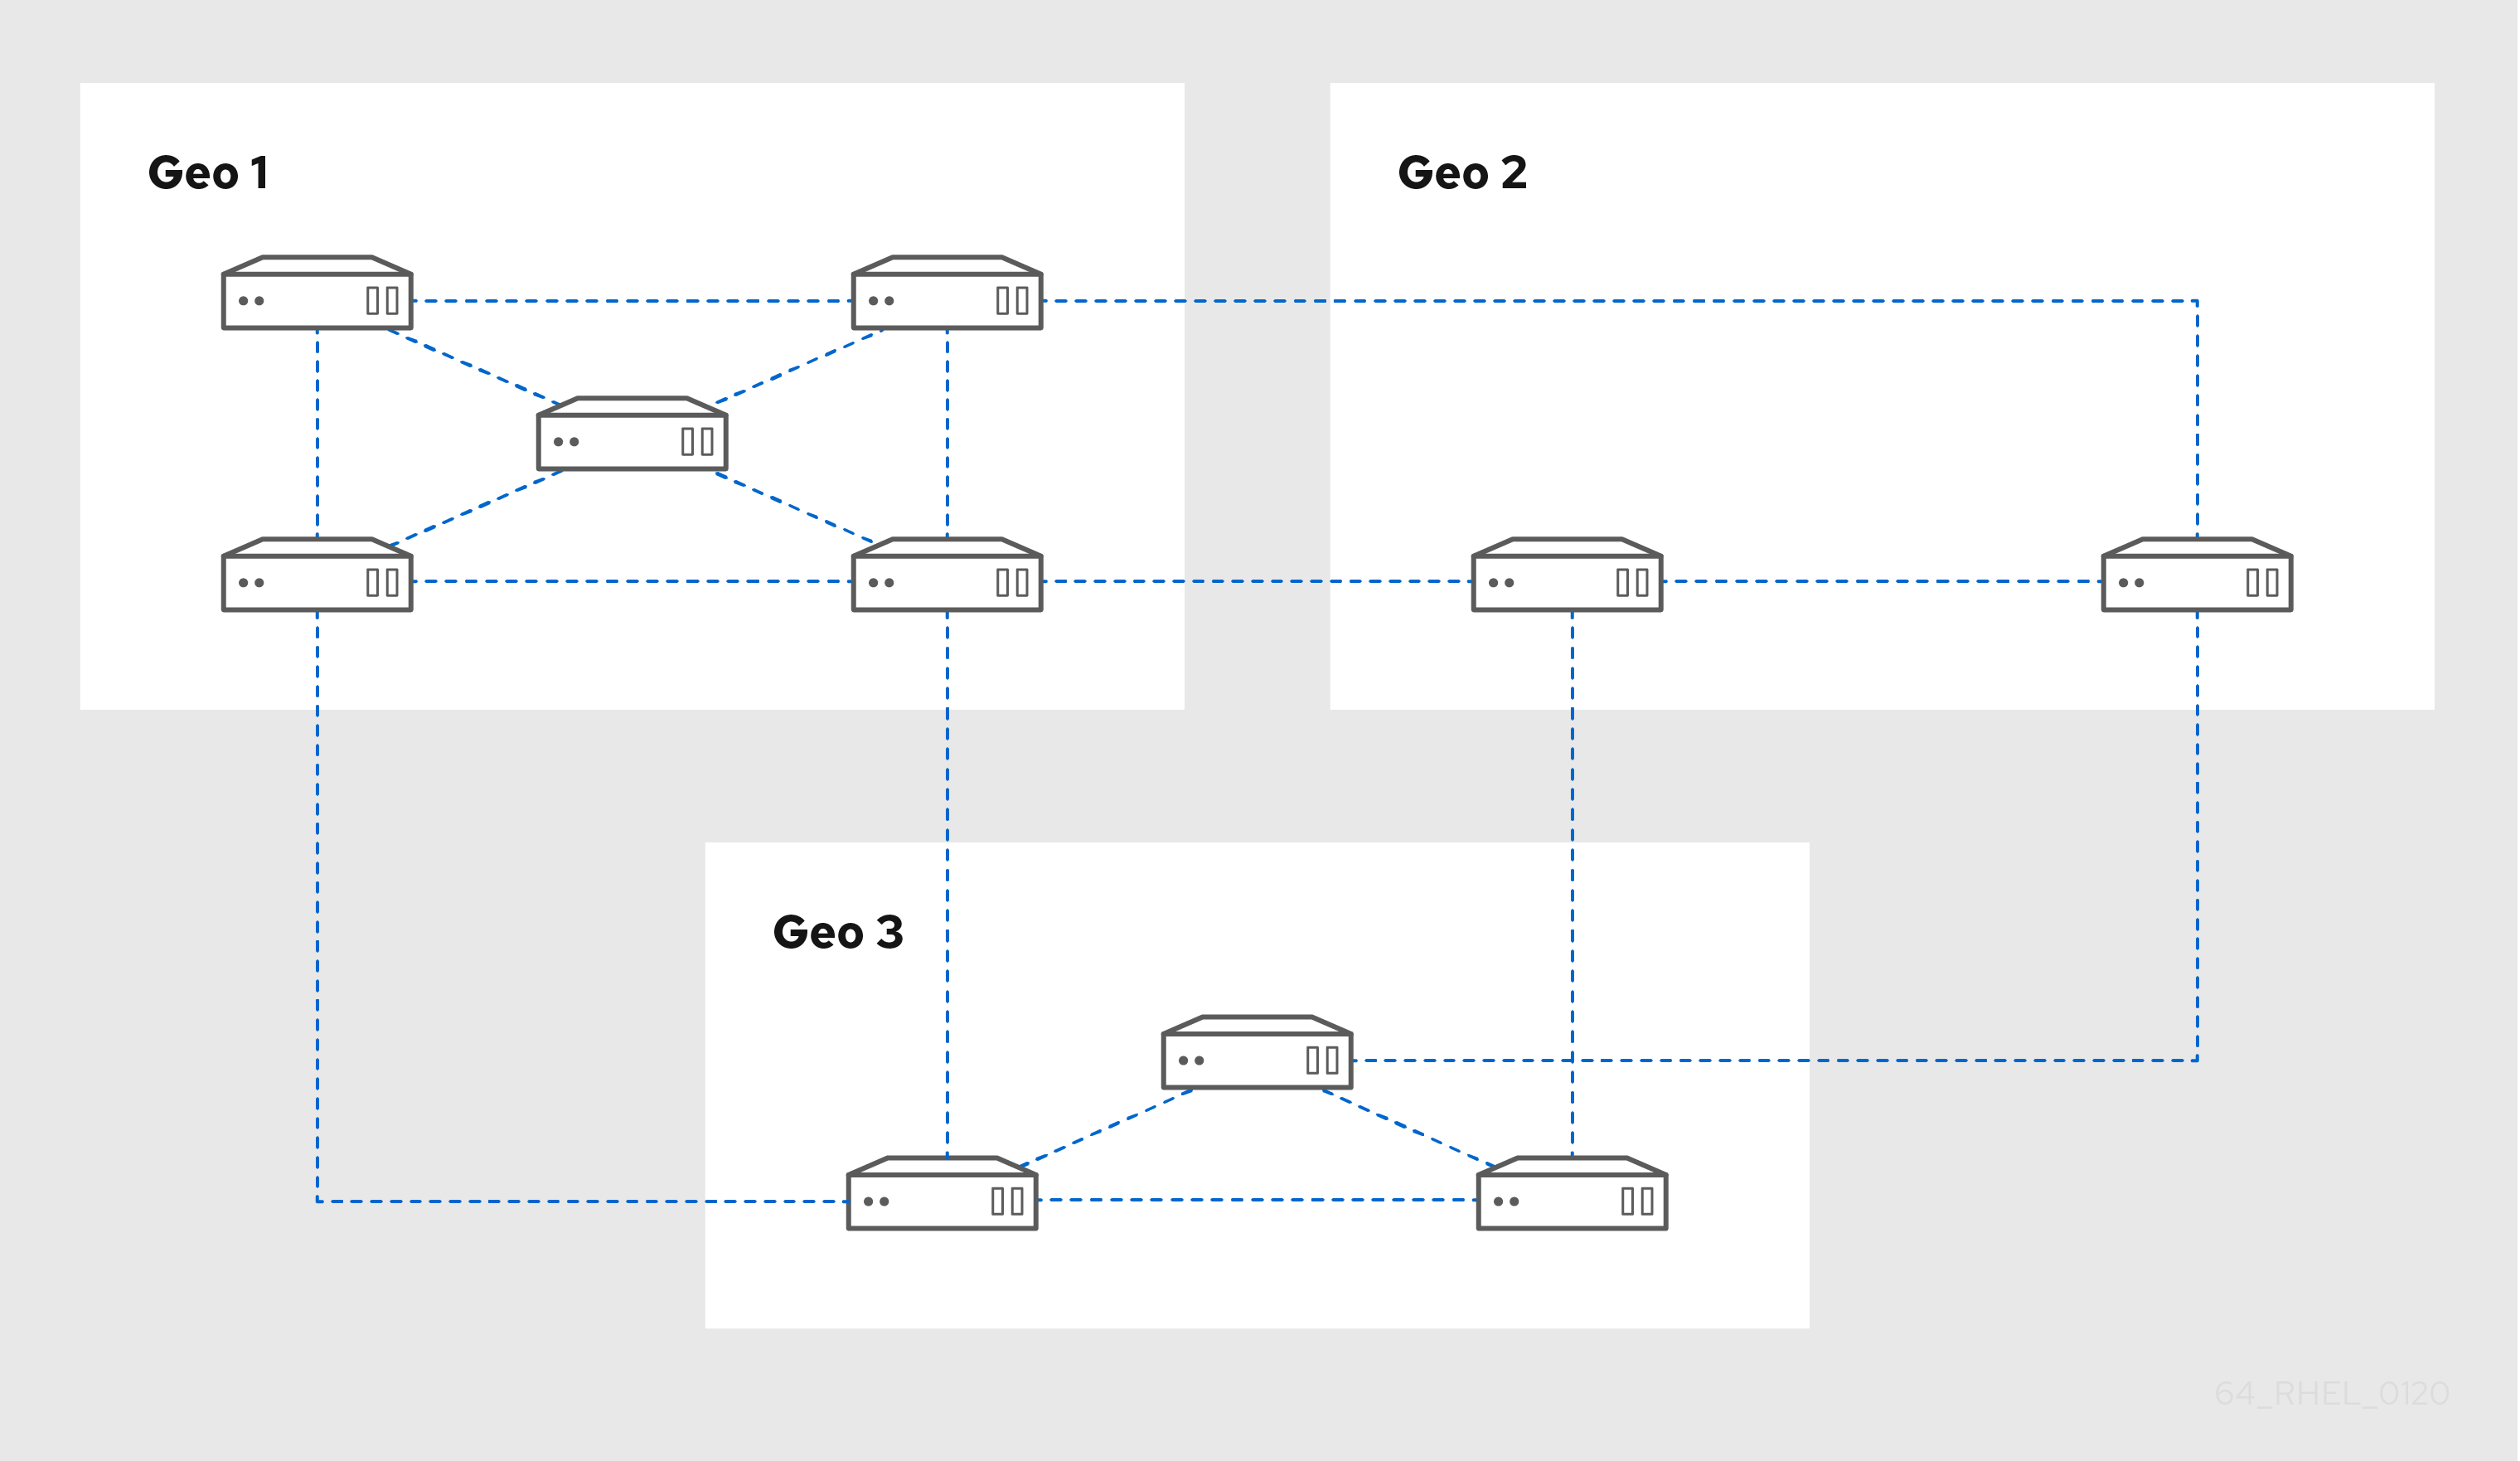 3 つのデータセンターの図: Geo 1 には、相互に接続された 5 つのサーバーがあります。Geo 2 には、互いに接続された 2 つのサーバーがあります。Geo 3 には、三角形状に接続された 3 つのサーバーがあります。各 Geo から 2 つのサーバーが次の Geo のサーバーに接続する 2 つの接続があります。